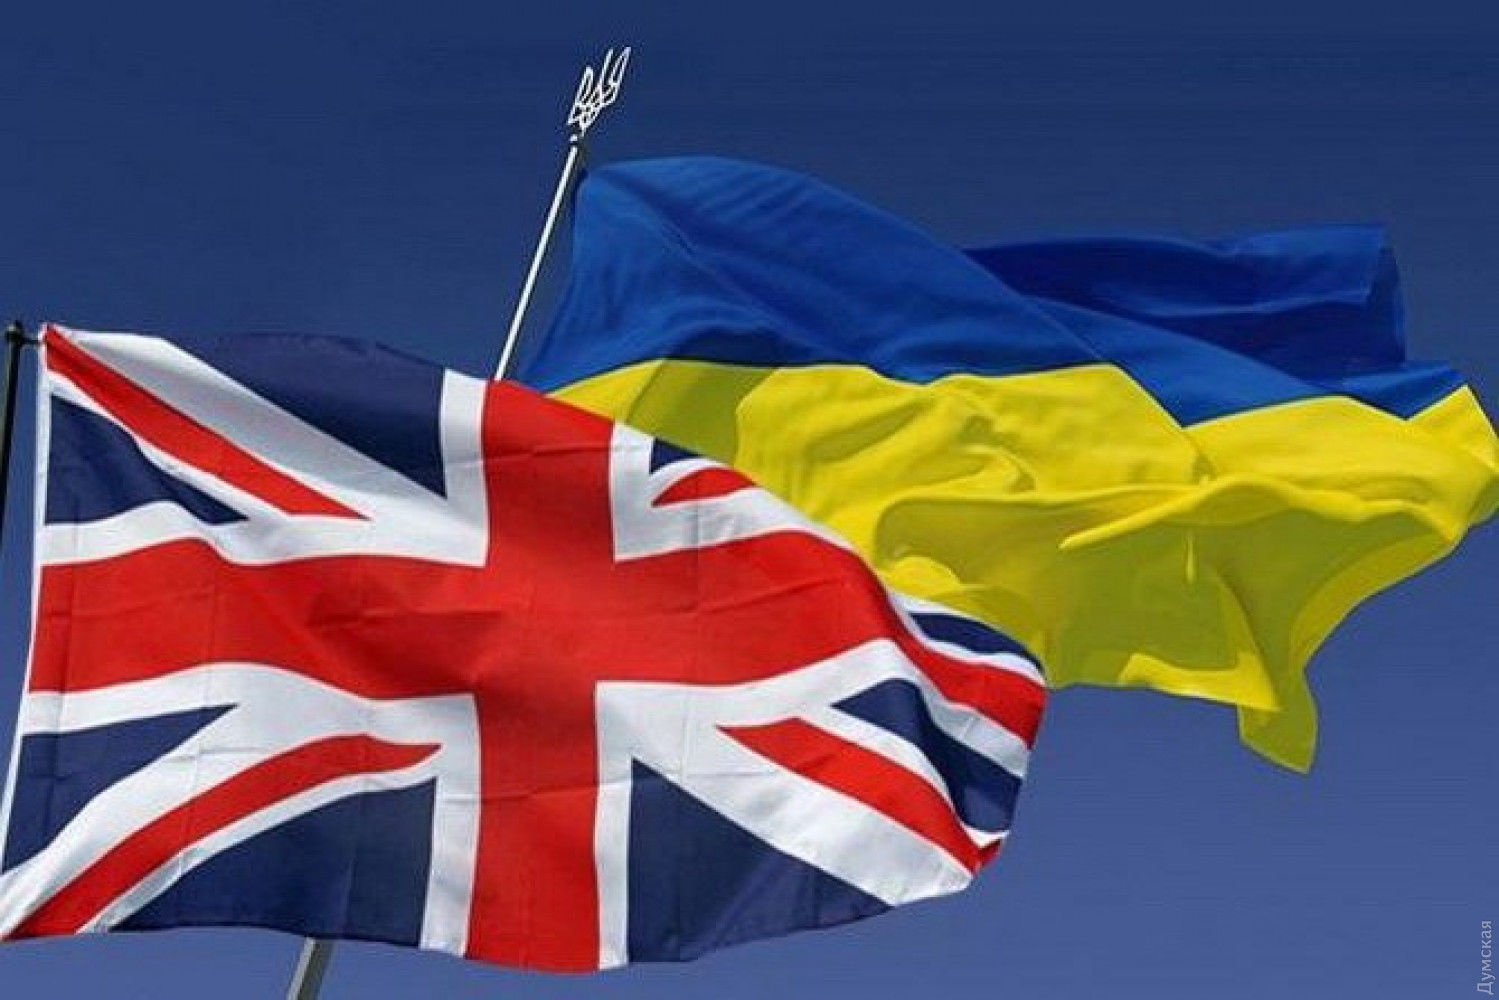 Отменил пошлины и квоты на экспорт в Британию парламент Украины